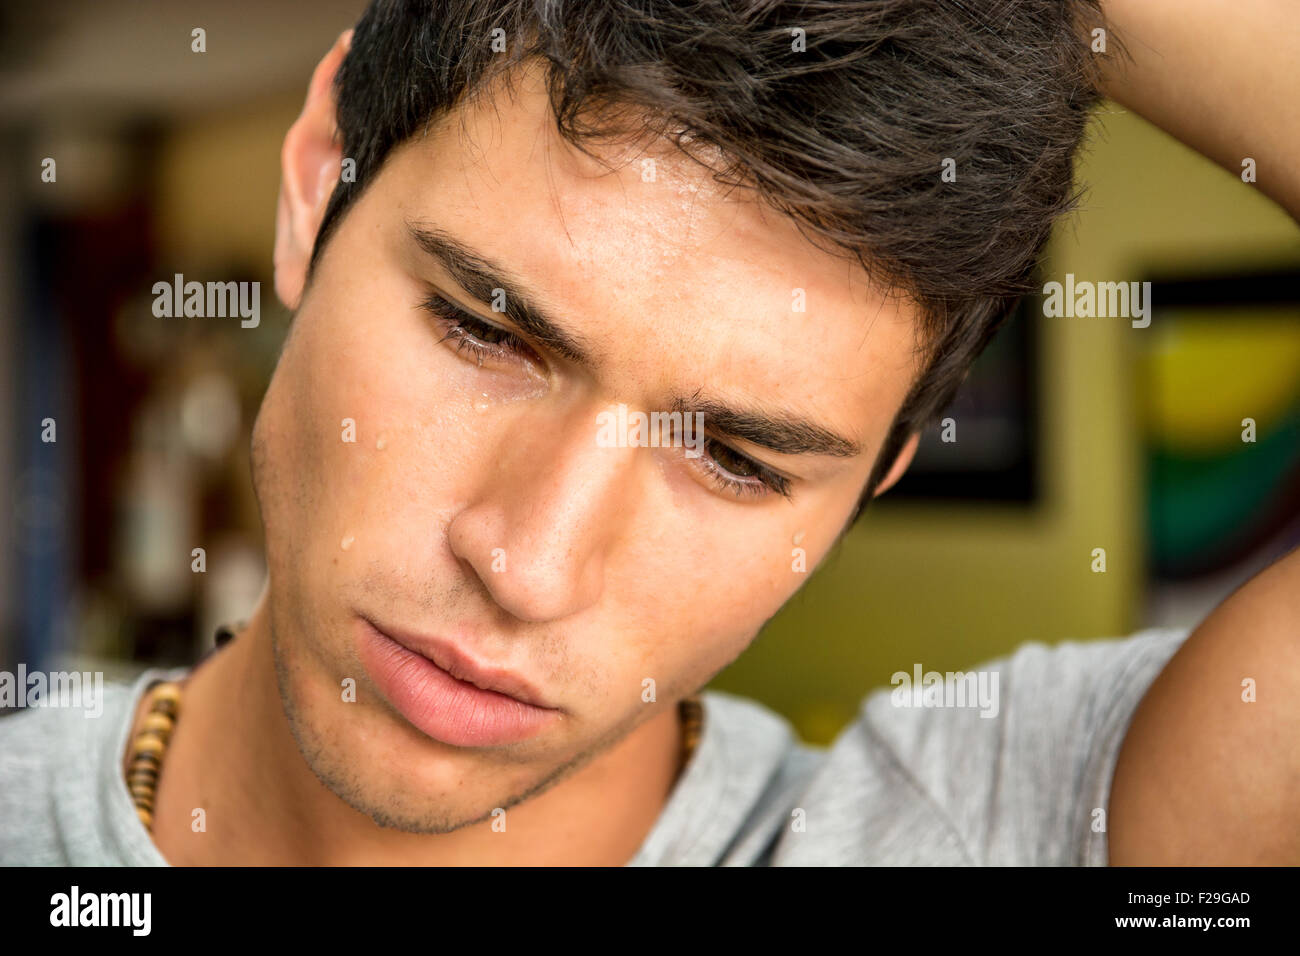 Close up visage d'un beau jeune homme pensif avec des larmes sur son visage, regardant vers le bas, inquiets ou tristes. Banque D'Images